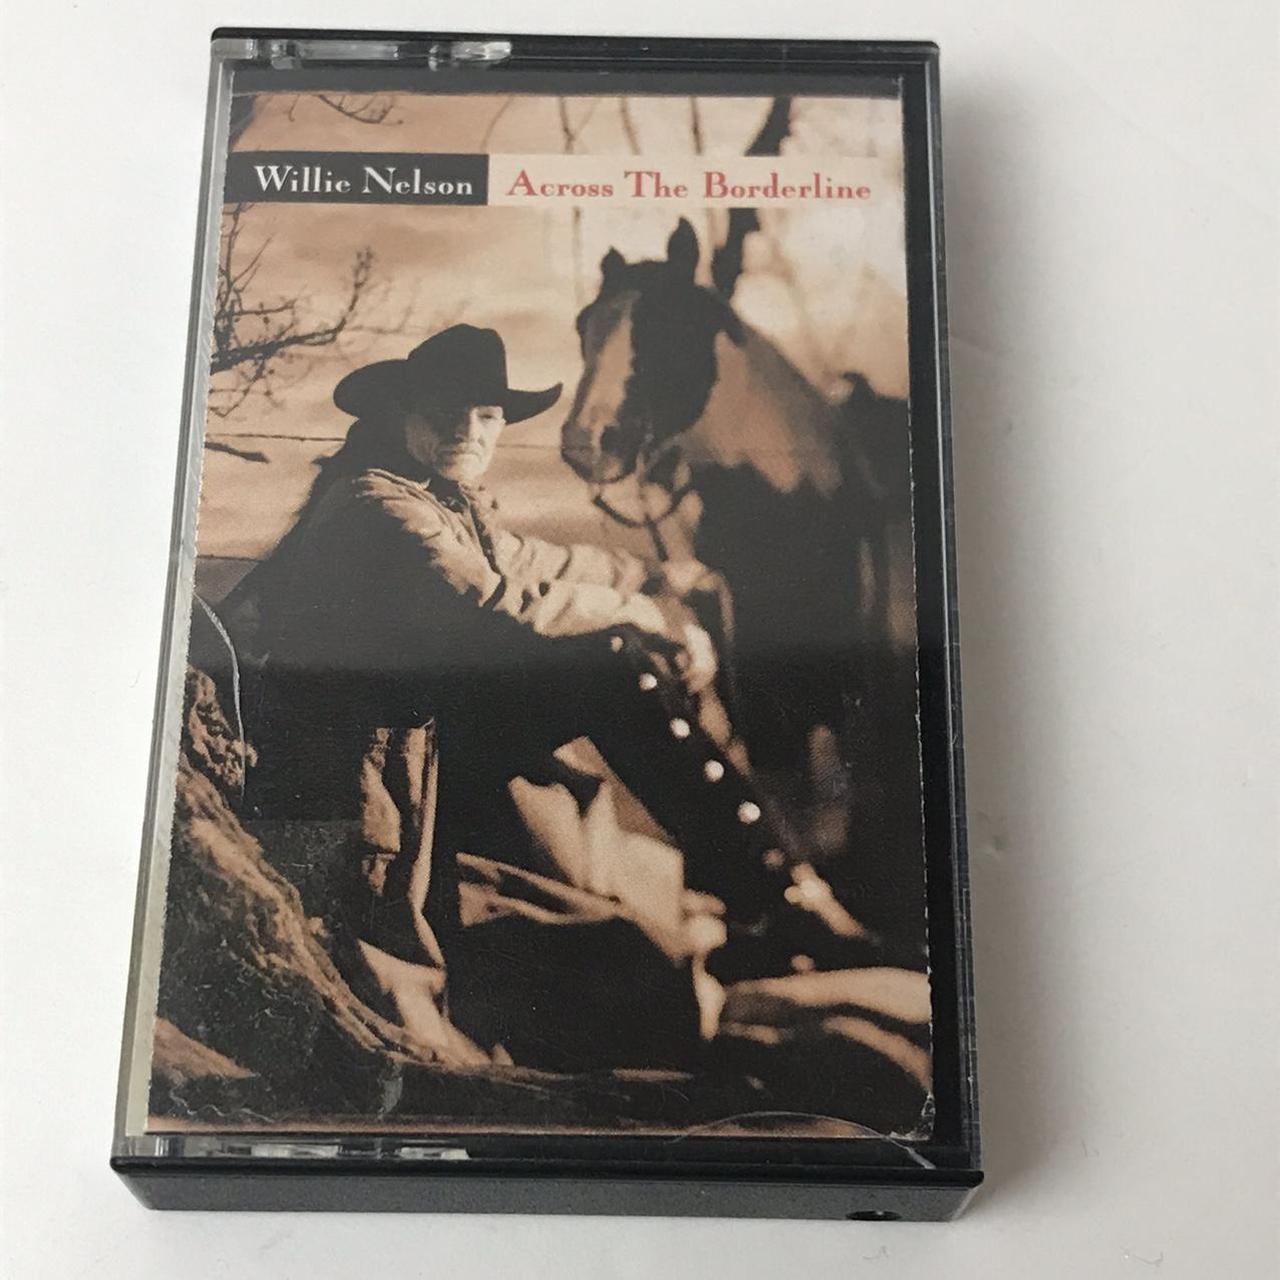 Willie Nelson Across the Borderline cassette tape.... - Depop